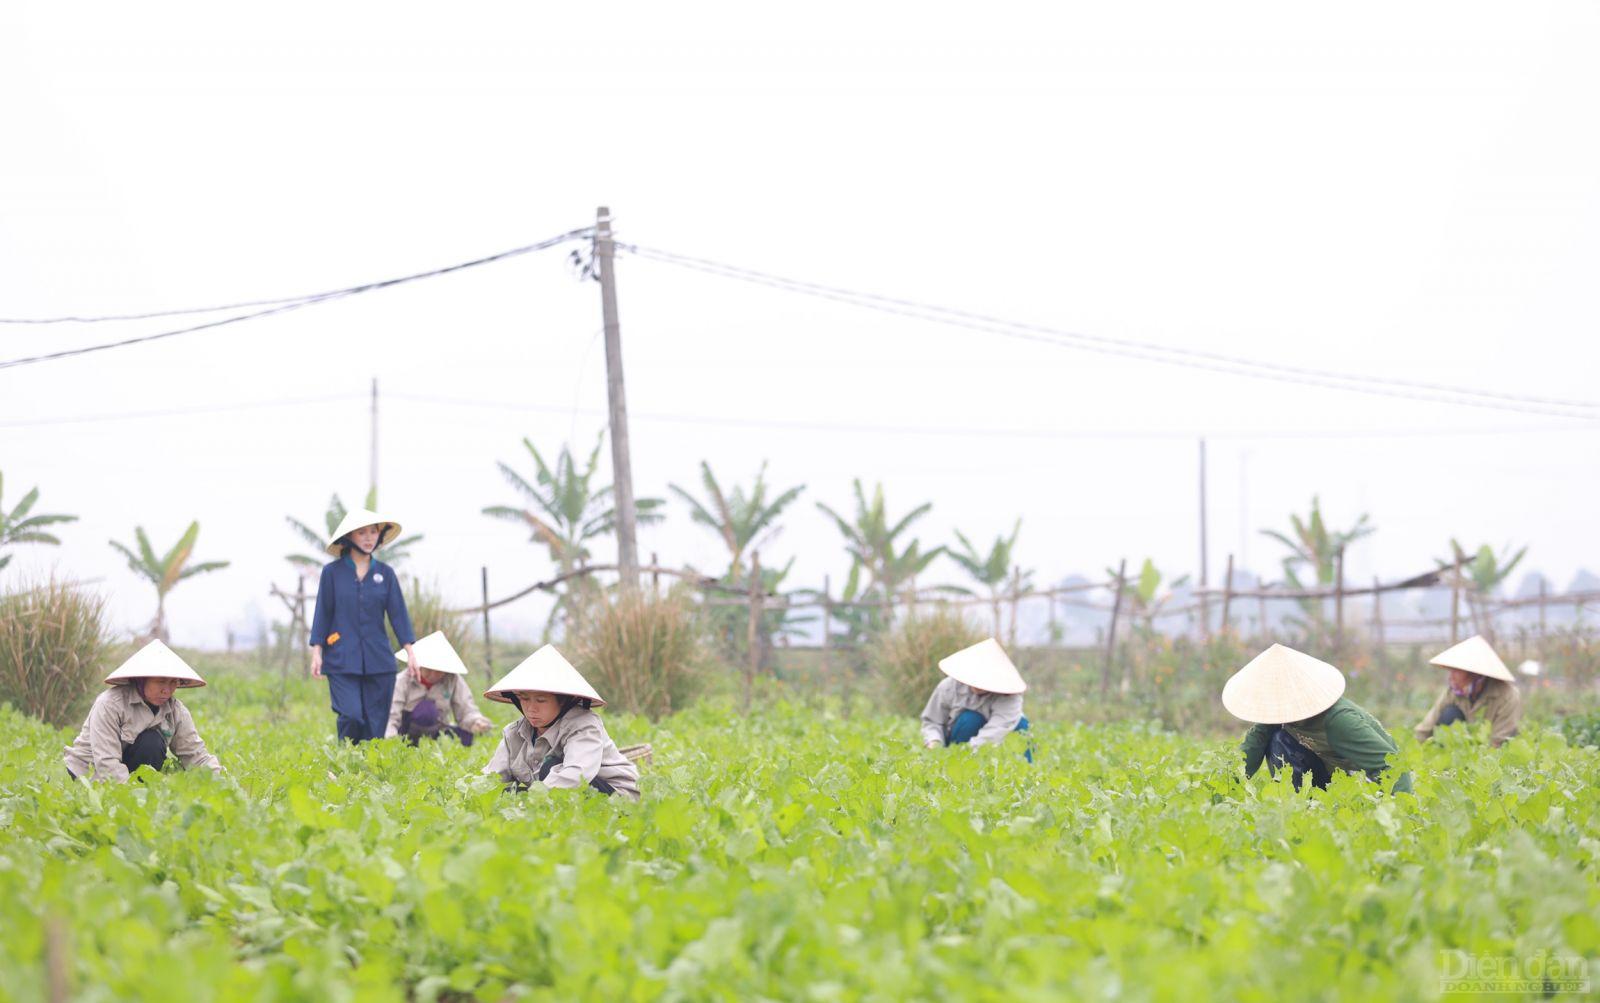 Nữ doanh nhân trẻ Đặng Thị Tâm (SN 1983) Giám đốc Công ty Cổ phần An An Agri ở huyện Diễn Châu, tỉnh Nghệ An với khát vọng đưa sản phẩm mì rau củ hữu cơ của mình vươn ra thế giới